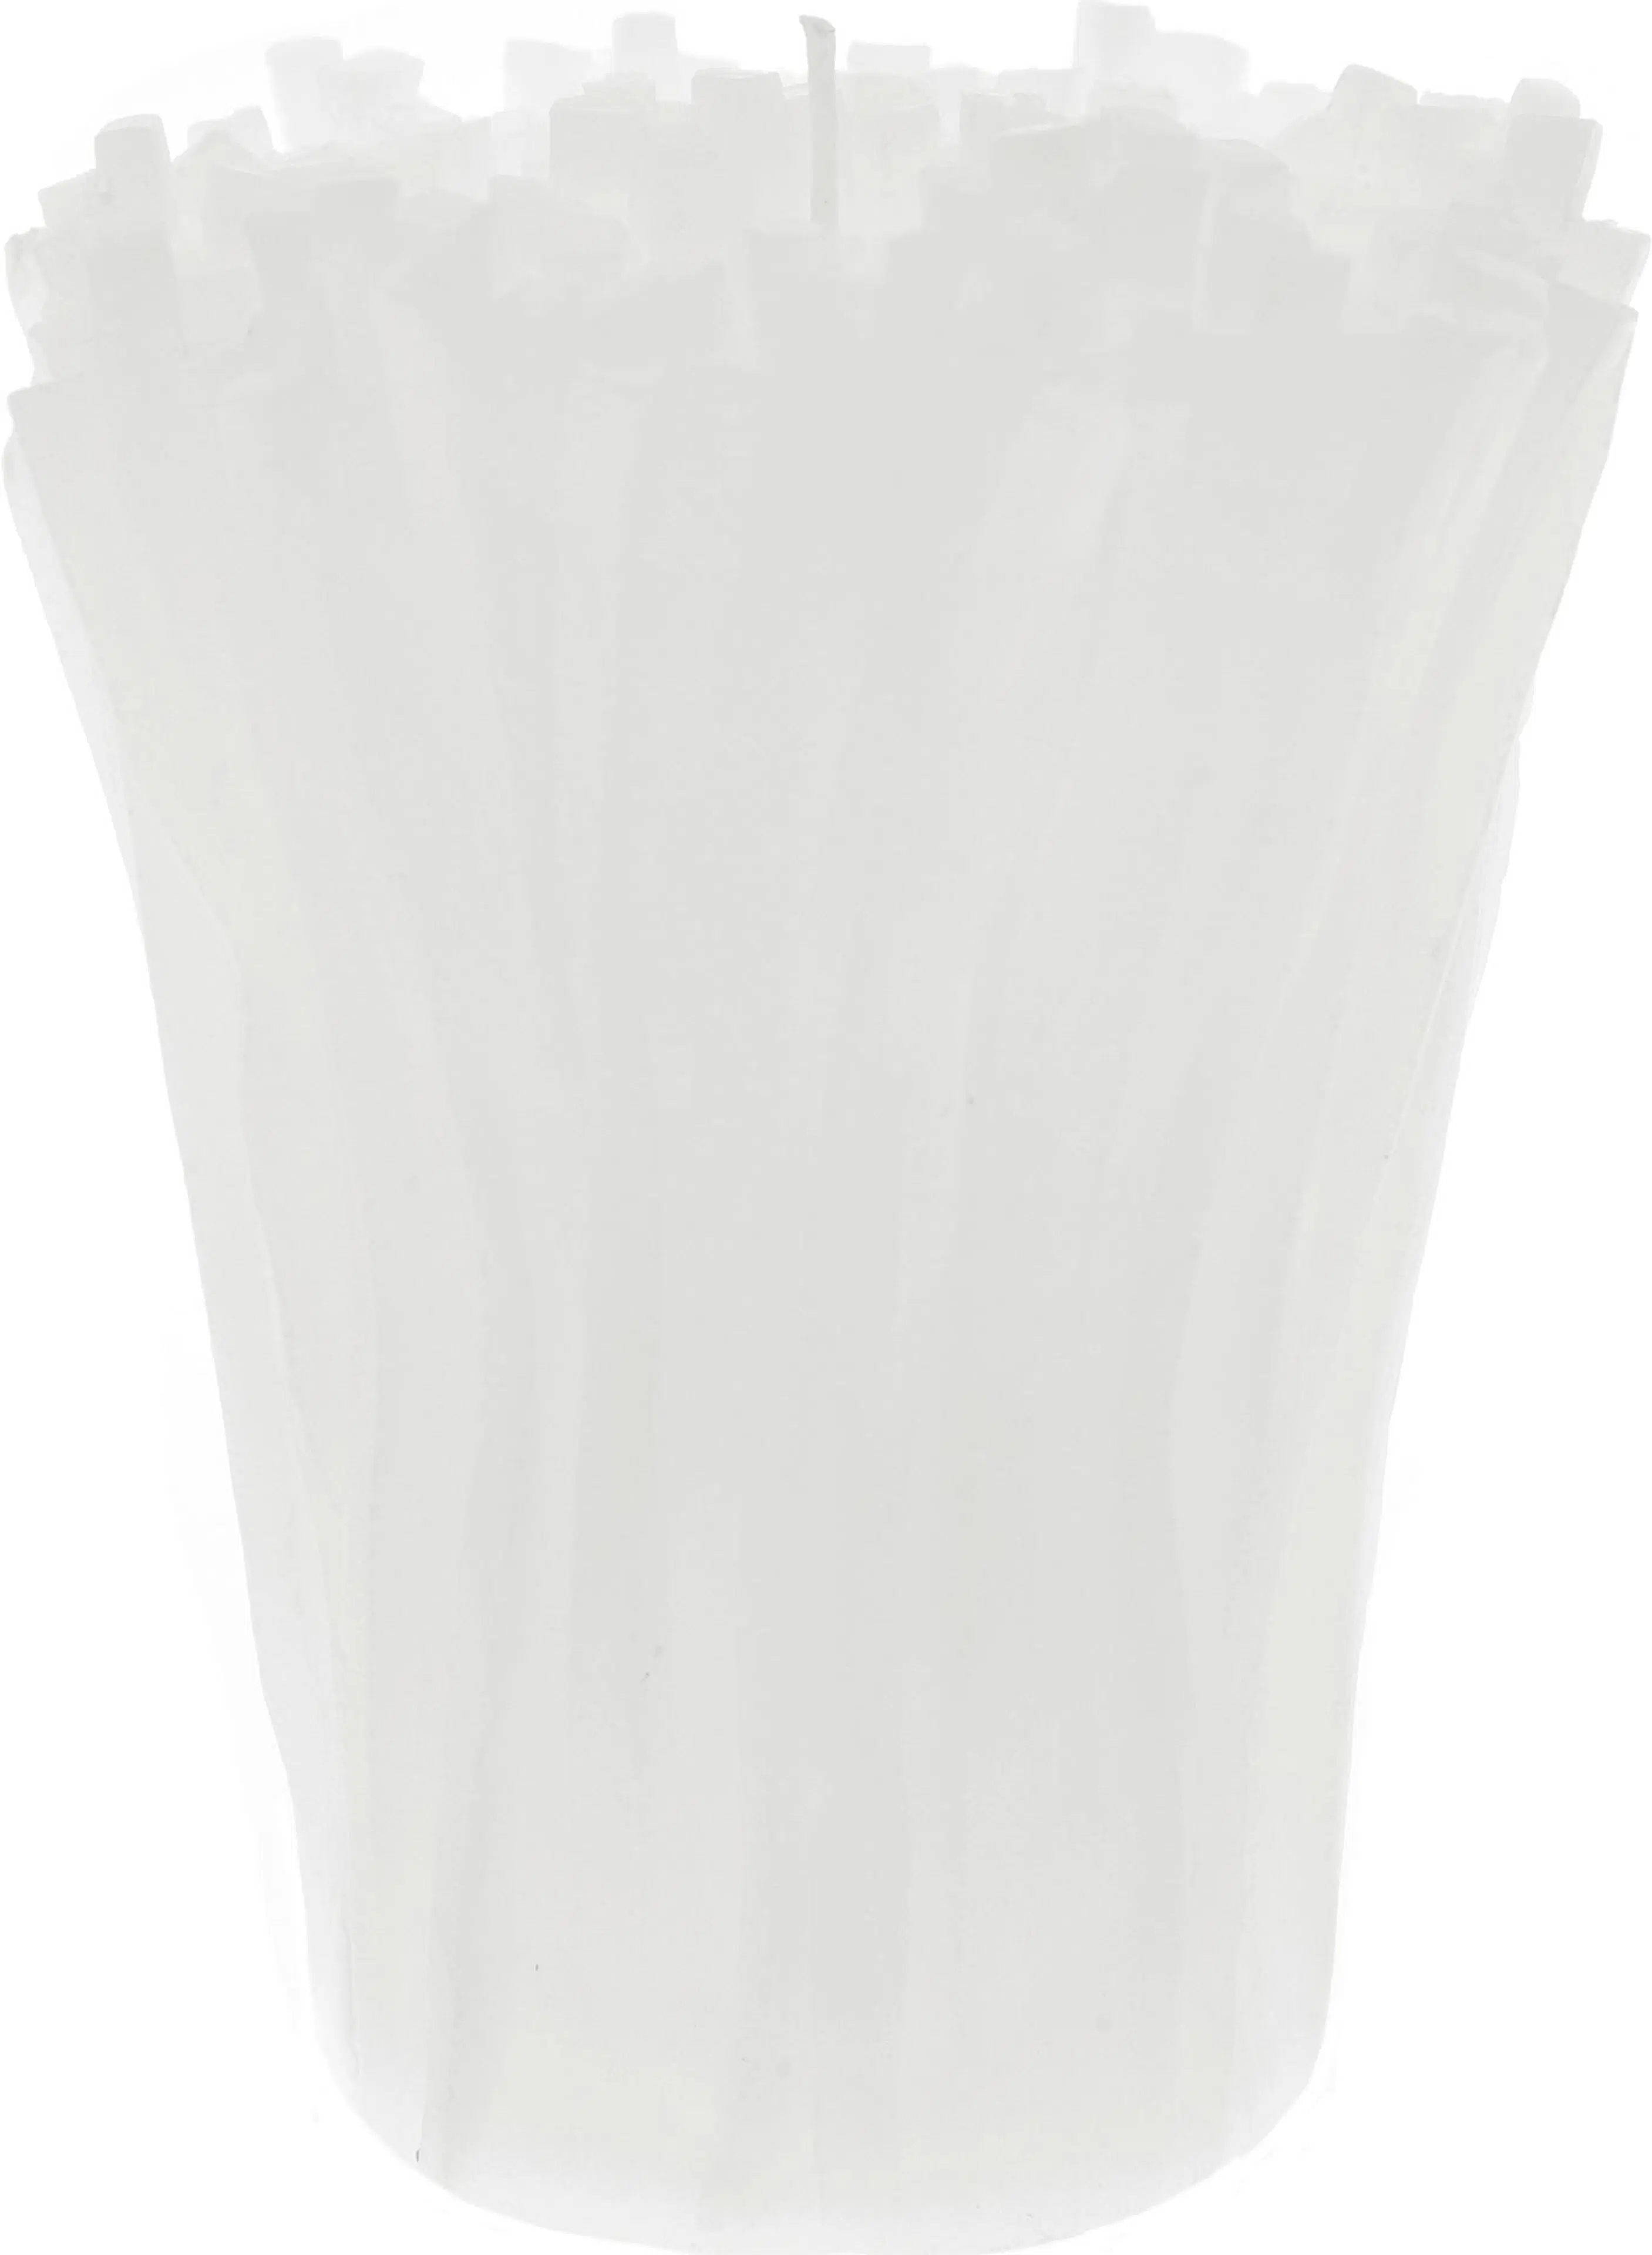 Pentik Kaisla Kynttilä 12x15 cm Valkoinen